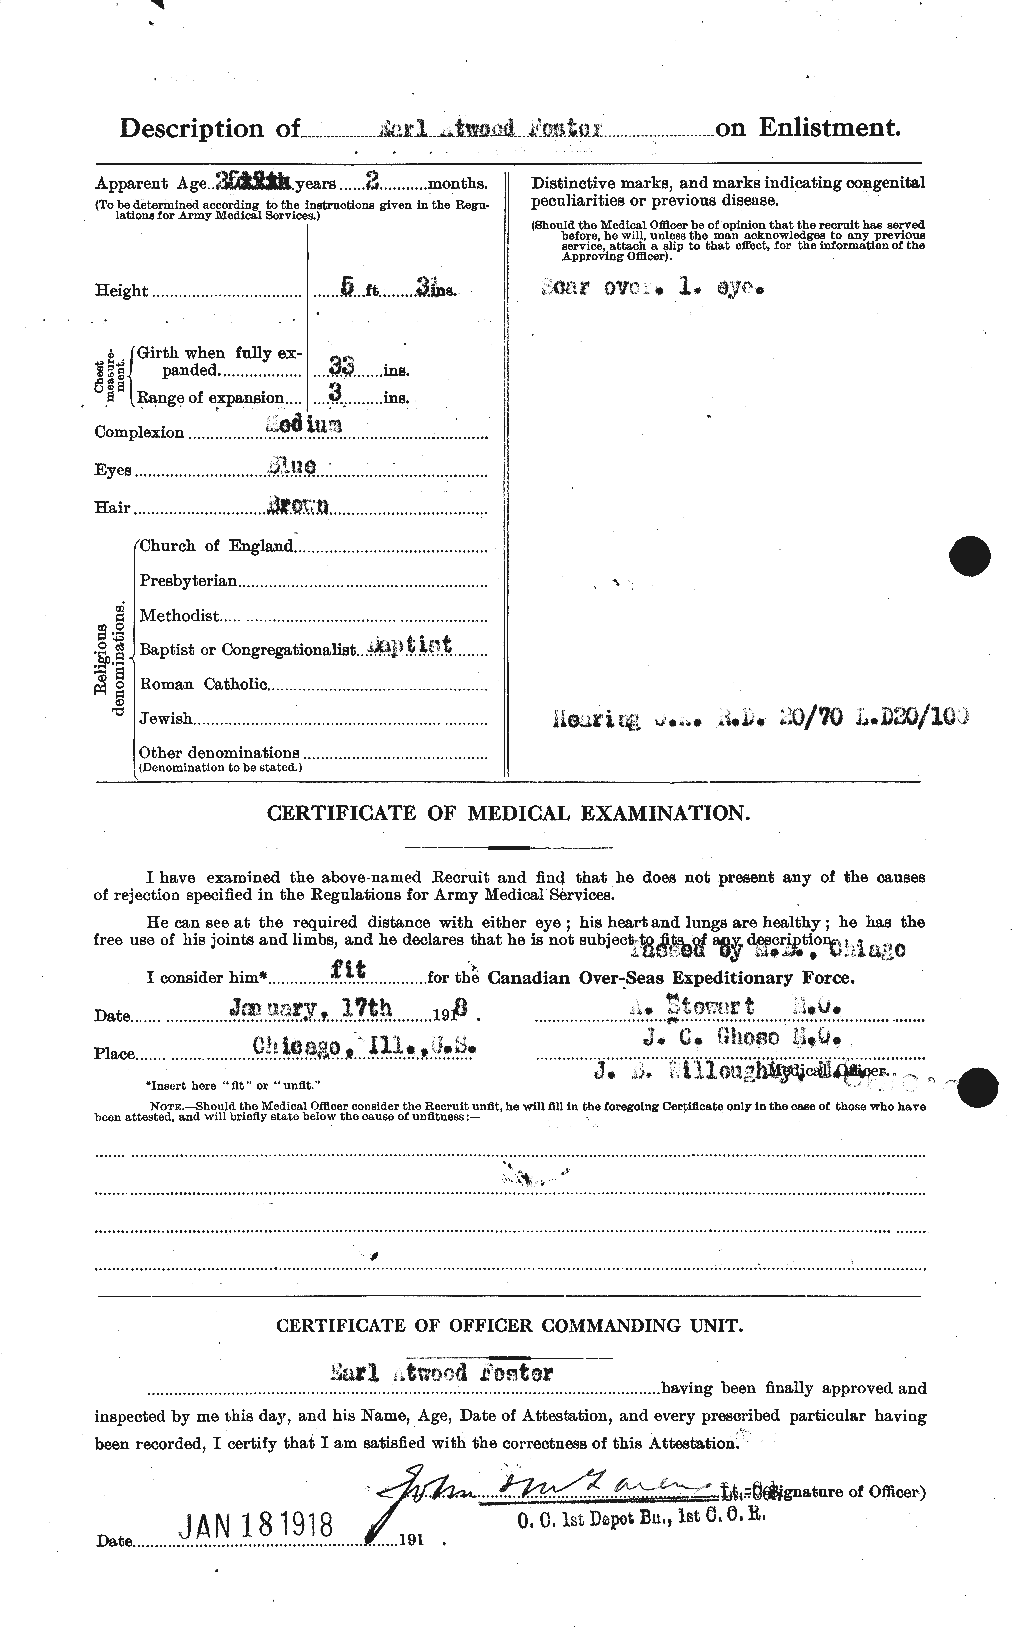 Dossiers du Personnel de la Première Guerre mondiale - CEC 330569b